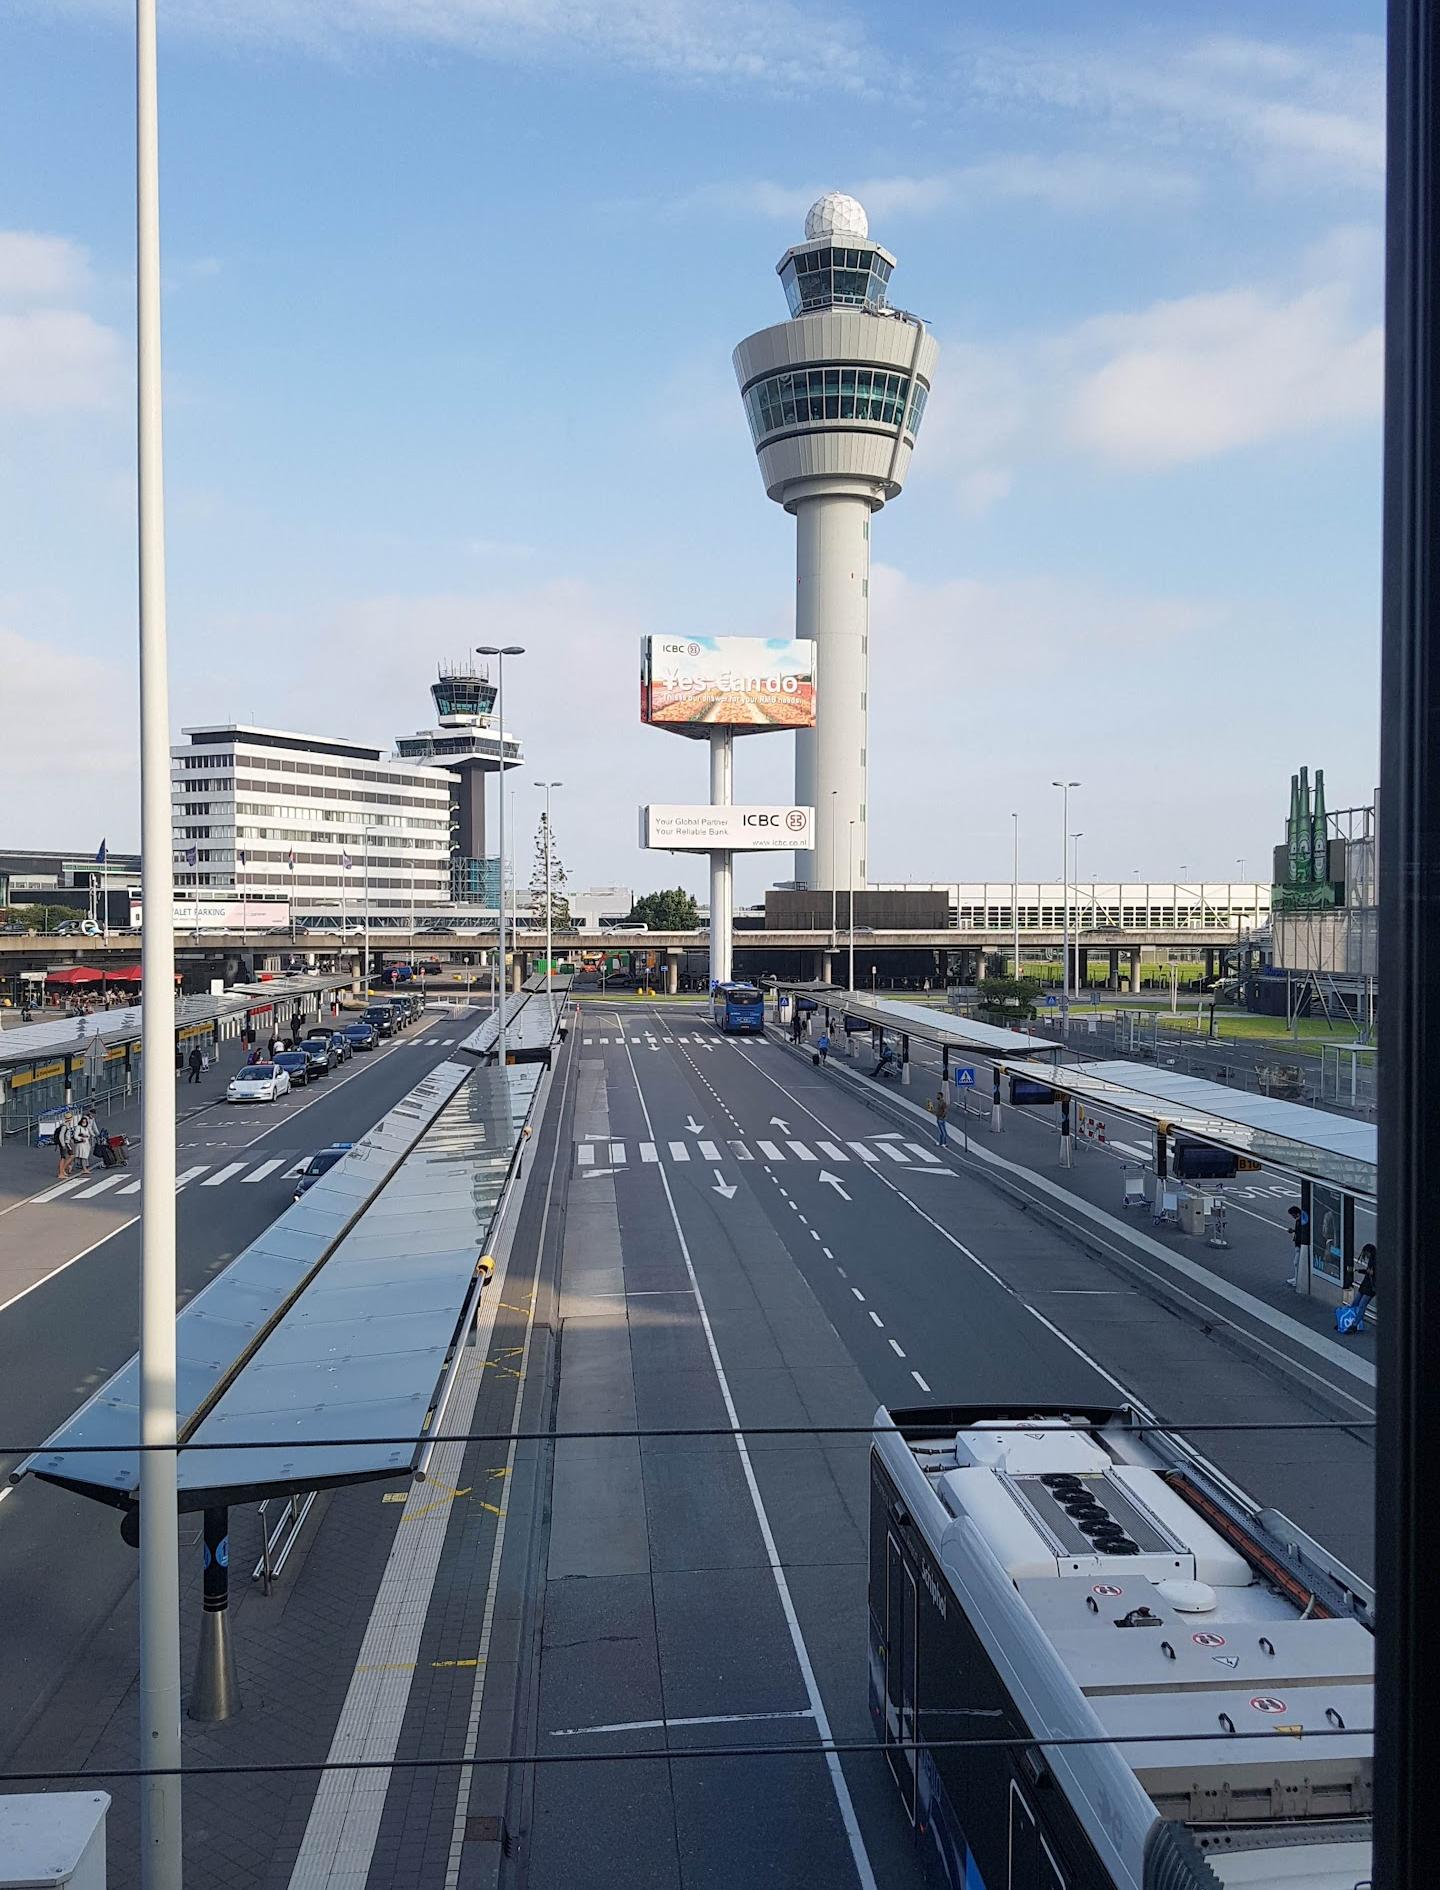 Aeroporto di Amsterdam-Schiphol